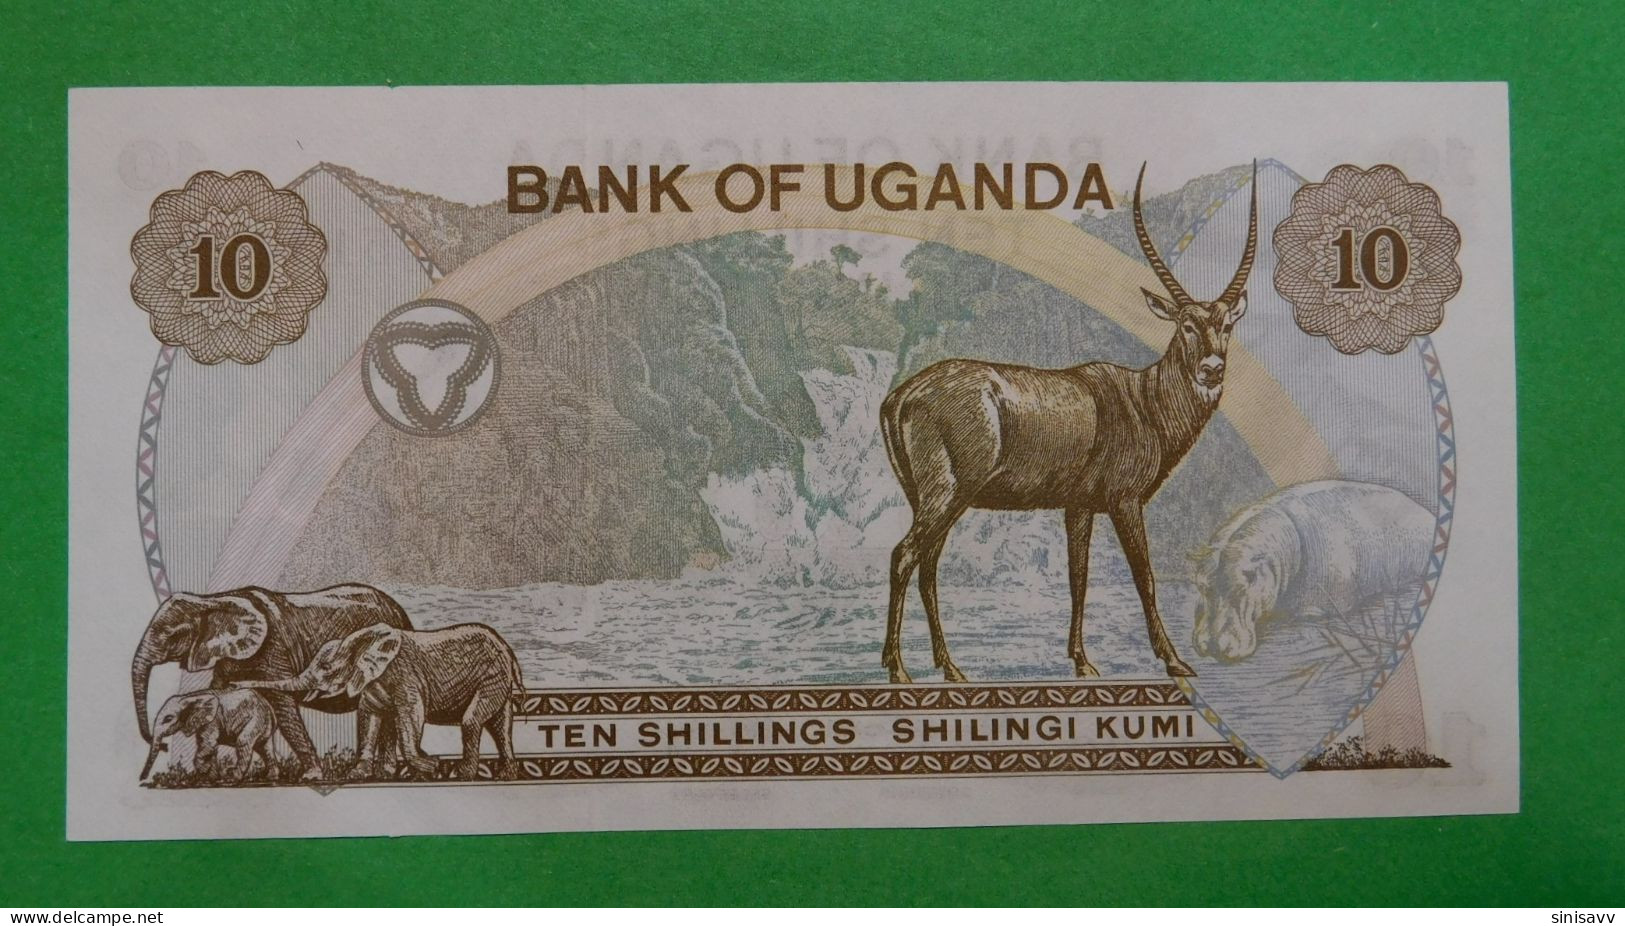 Uganda 10 shillings 1973